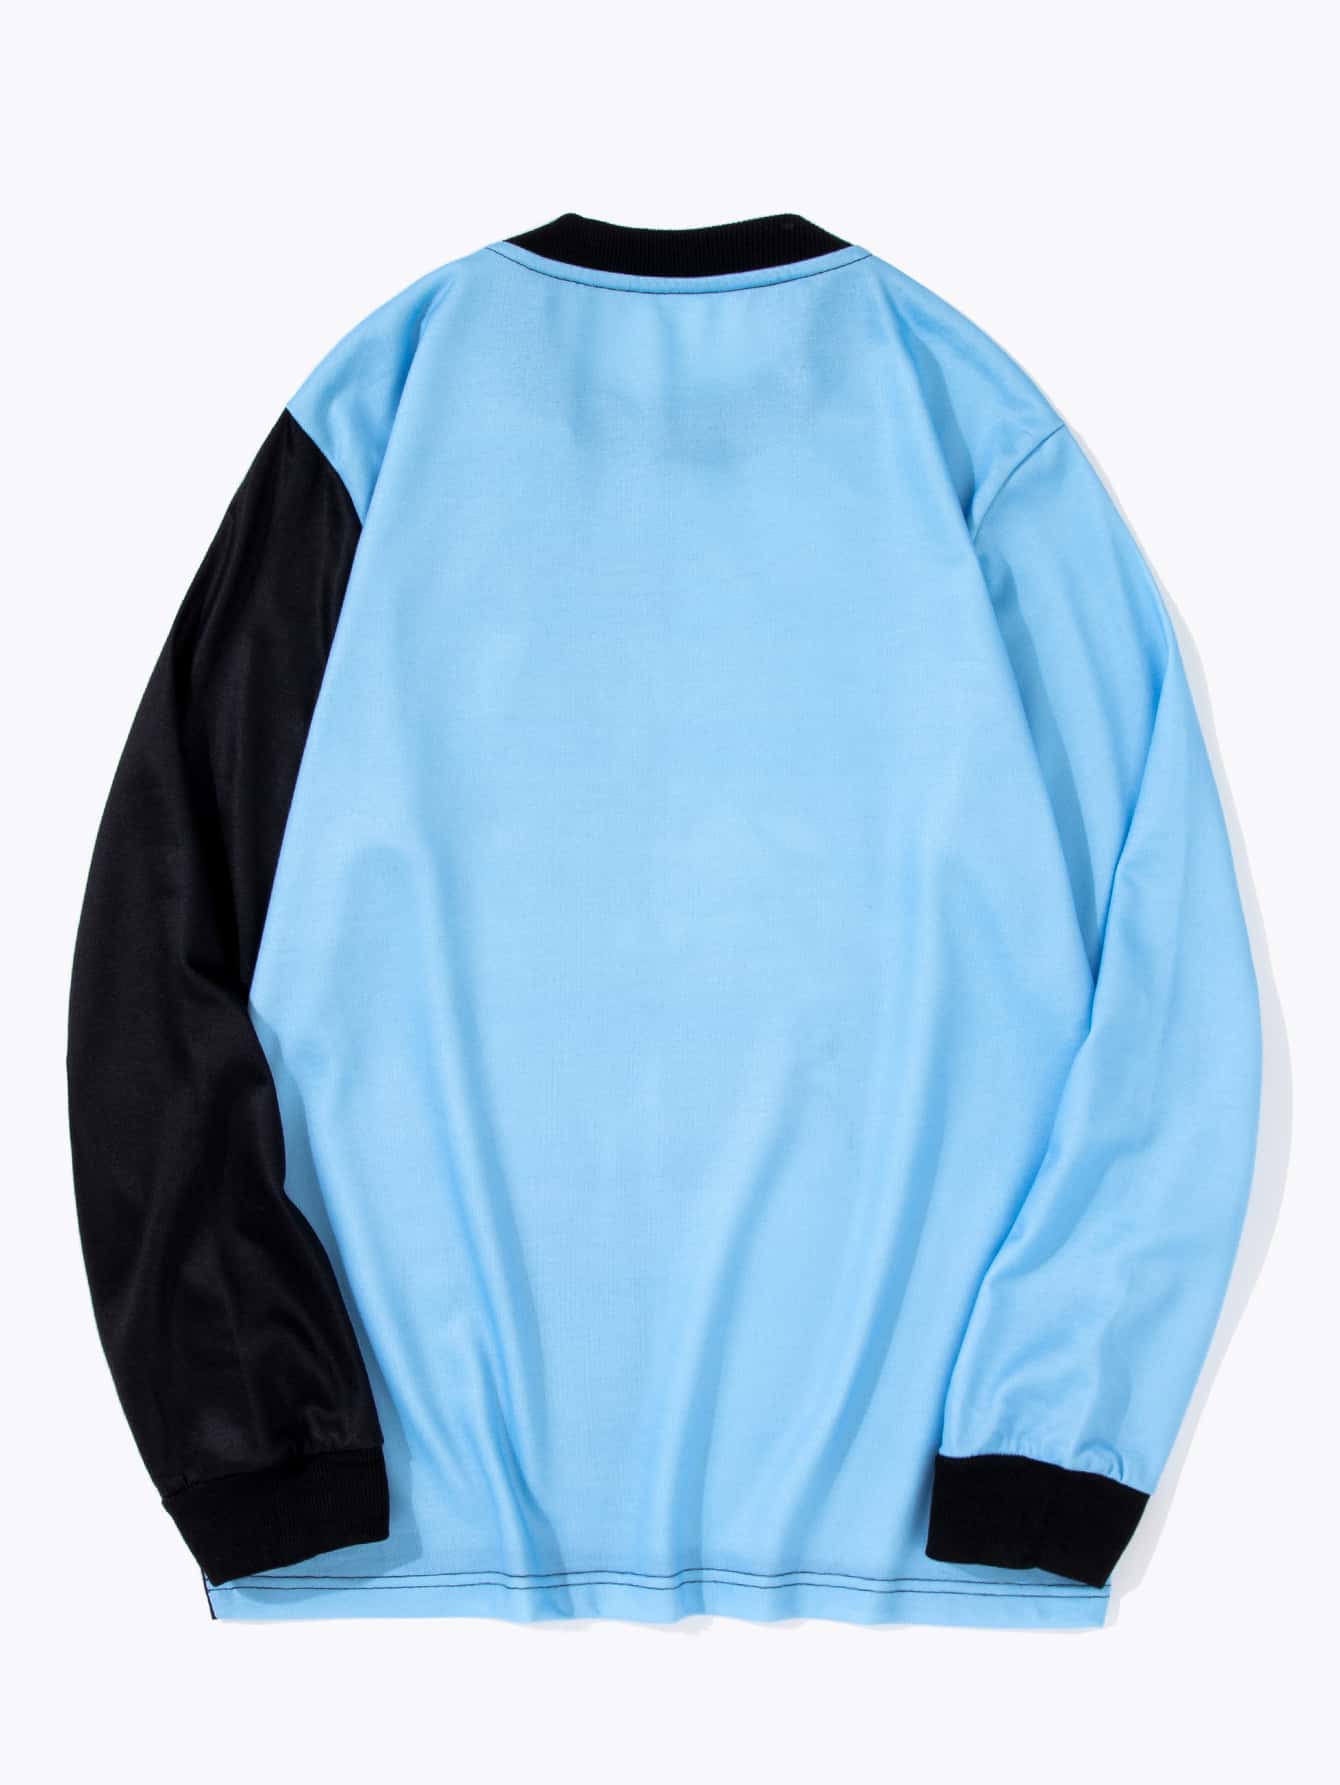 Пуловер двухцветный с принтом астронавта для мужчины SHEIN